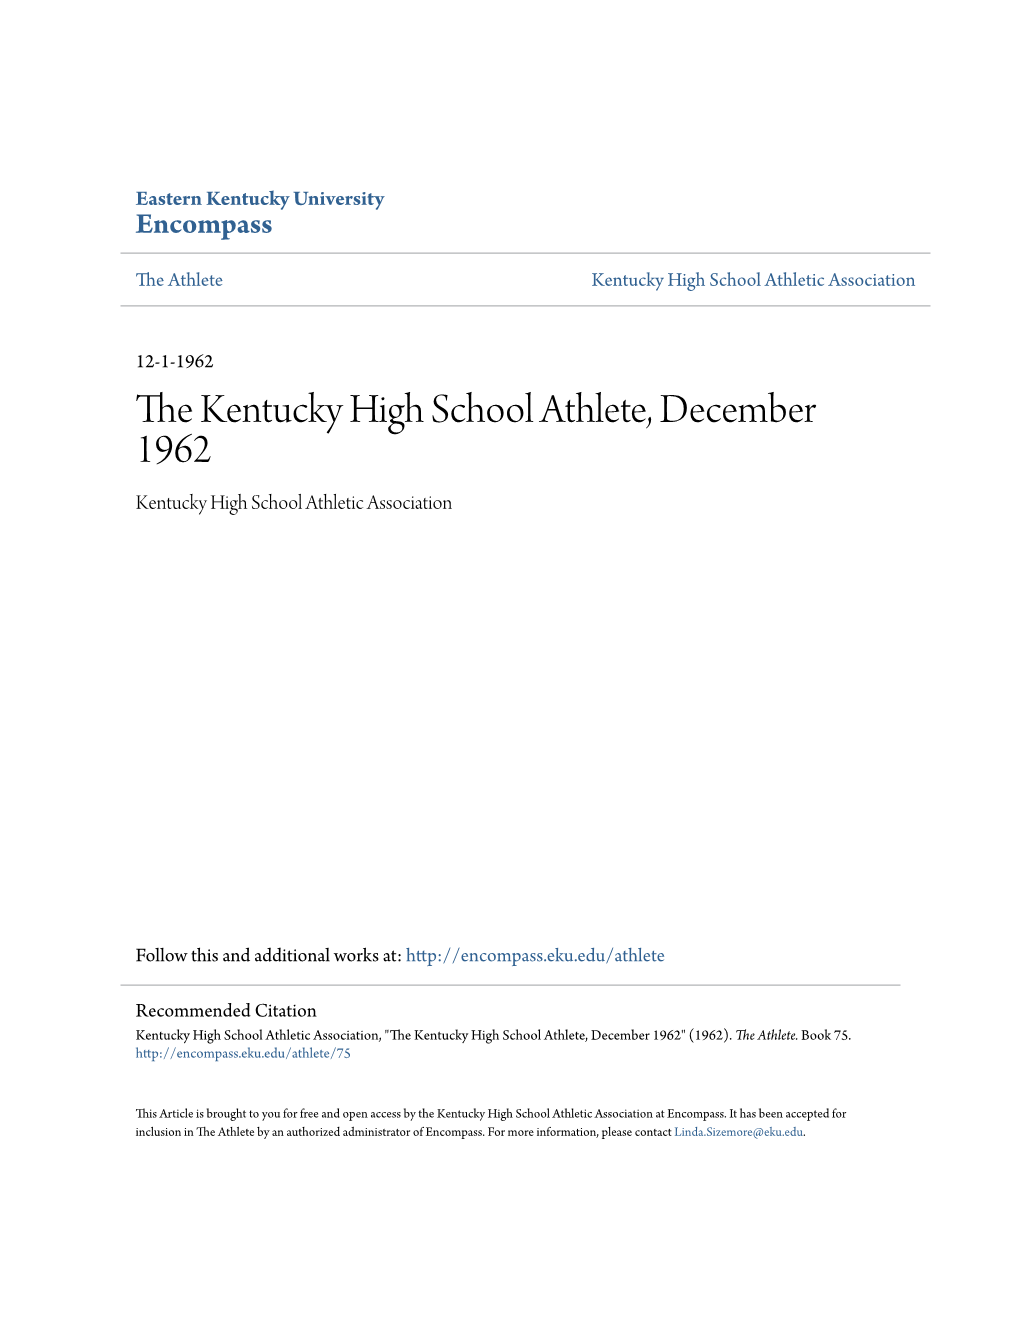 The Kentucky High School Athlete, December 1962 Kentucky High School Athletic Association